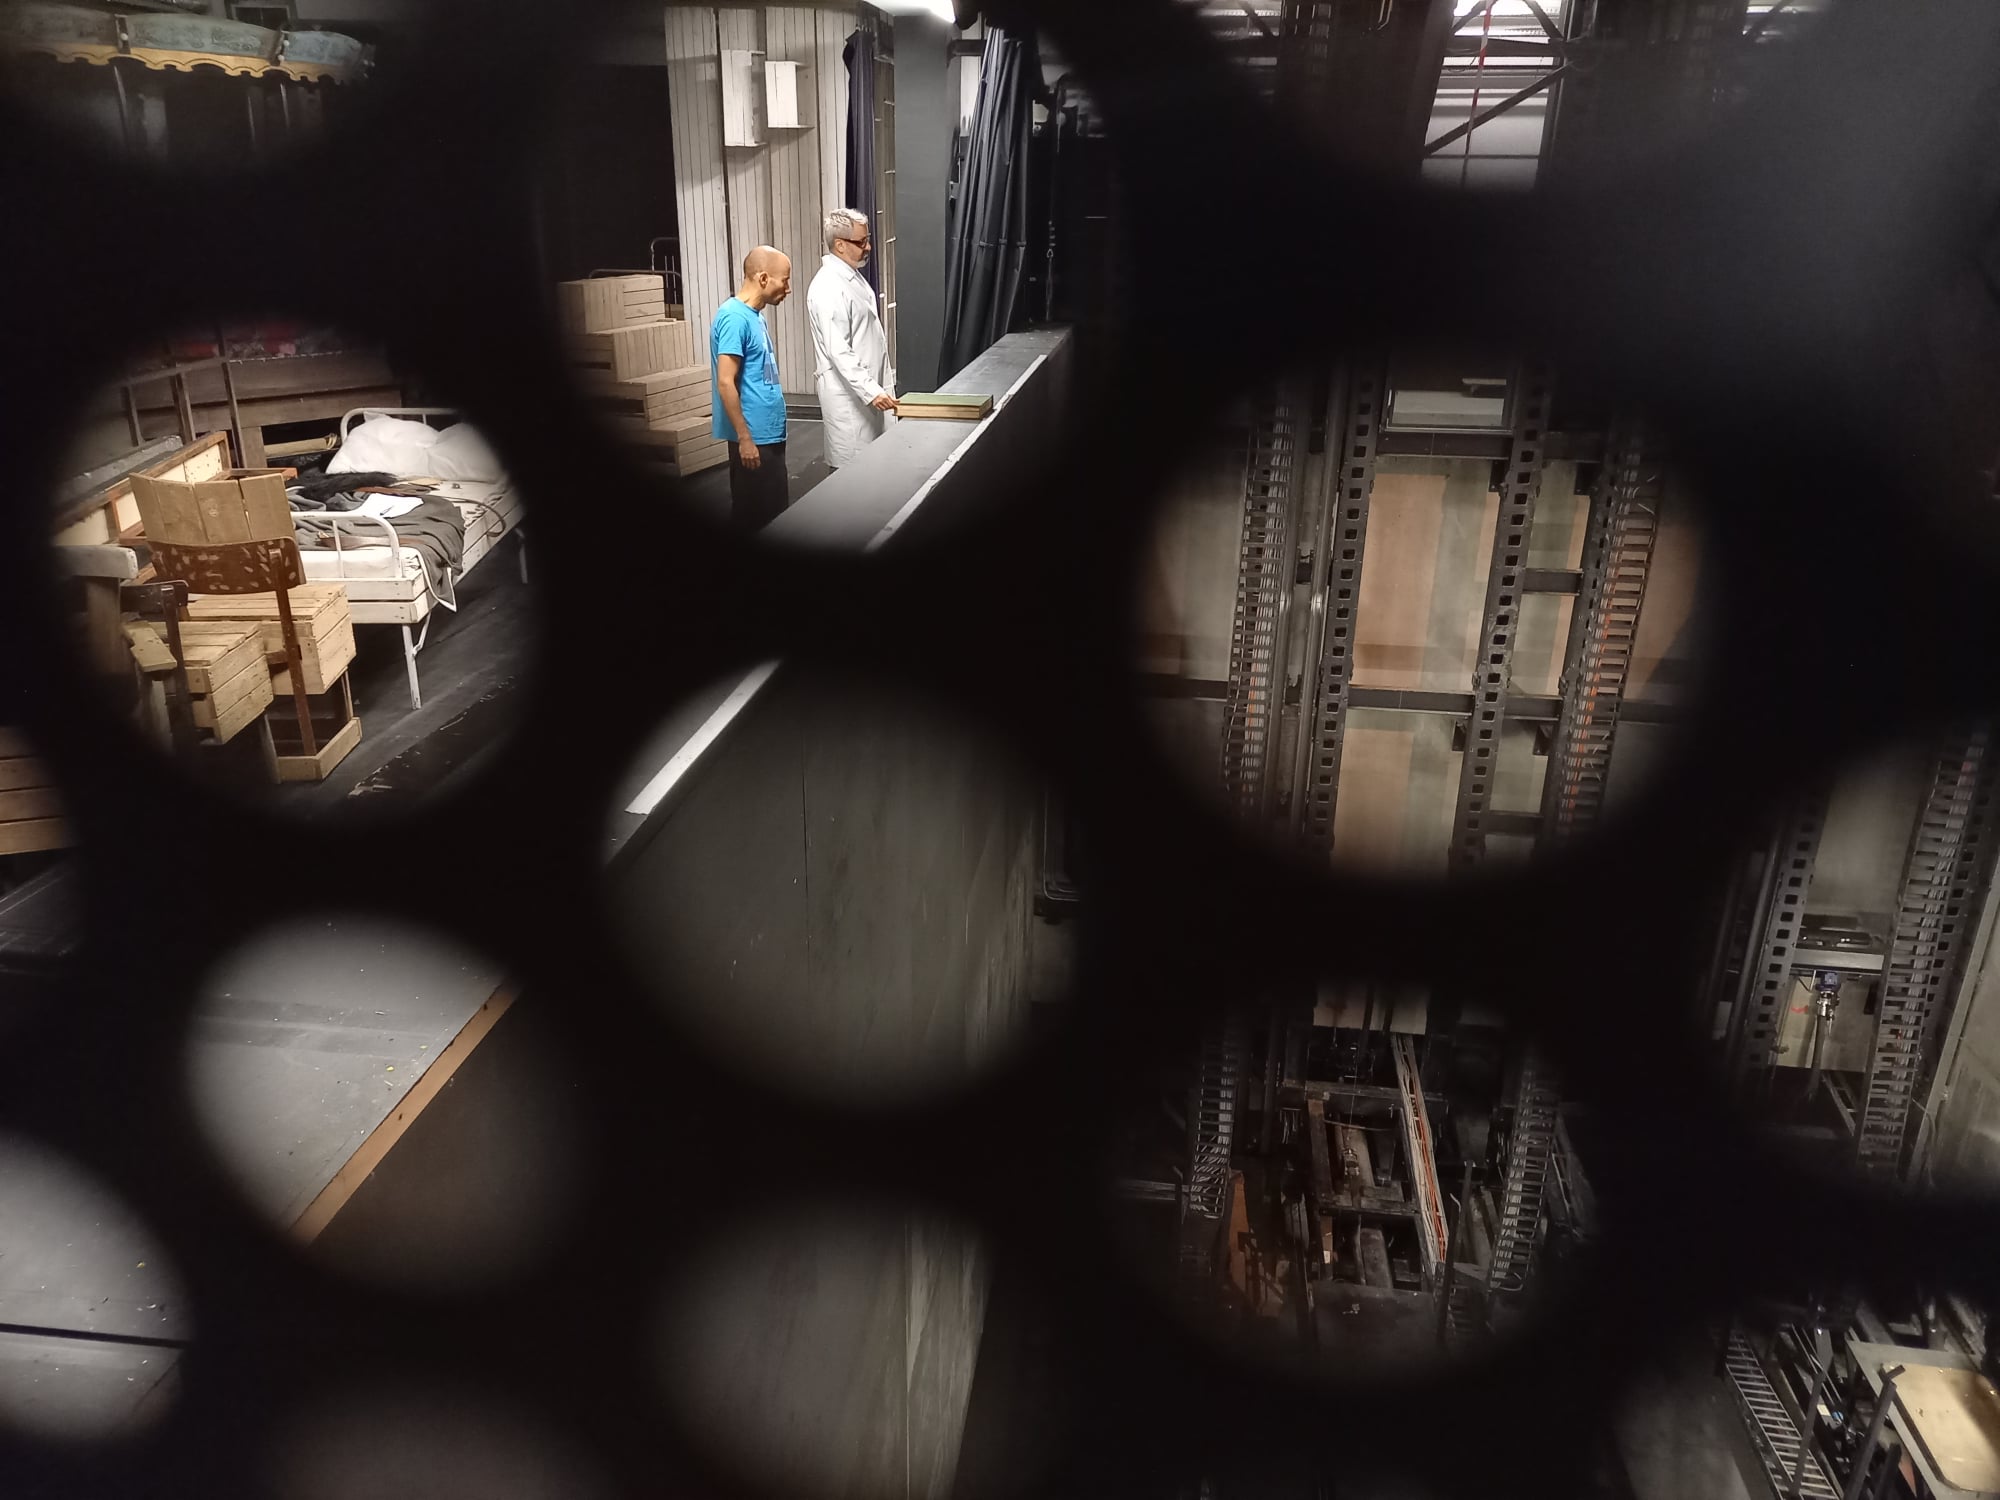 Przez okrągłe otwory ażurowej kraty widać jedną ze scen na planie serialu: aktorzy stoją nad głębokim otworem zapadni, mieszczącej hydrauliczny mechanizm podnoszenia podłogi scenicznej.